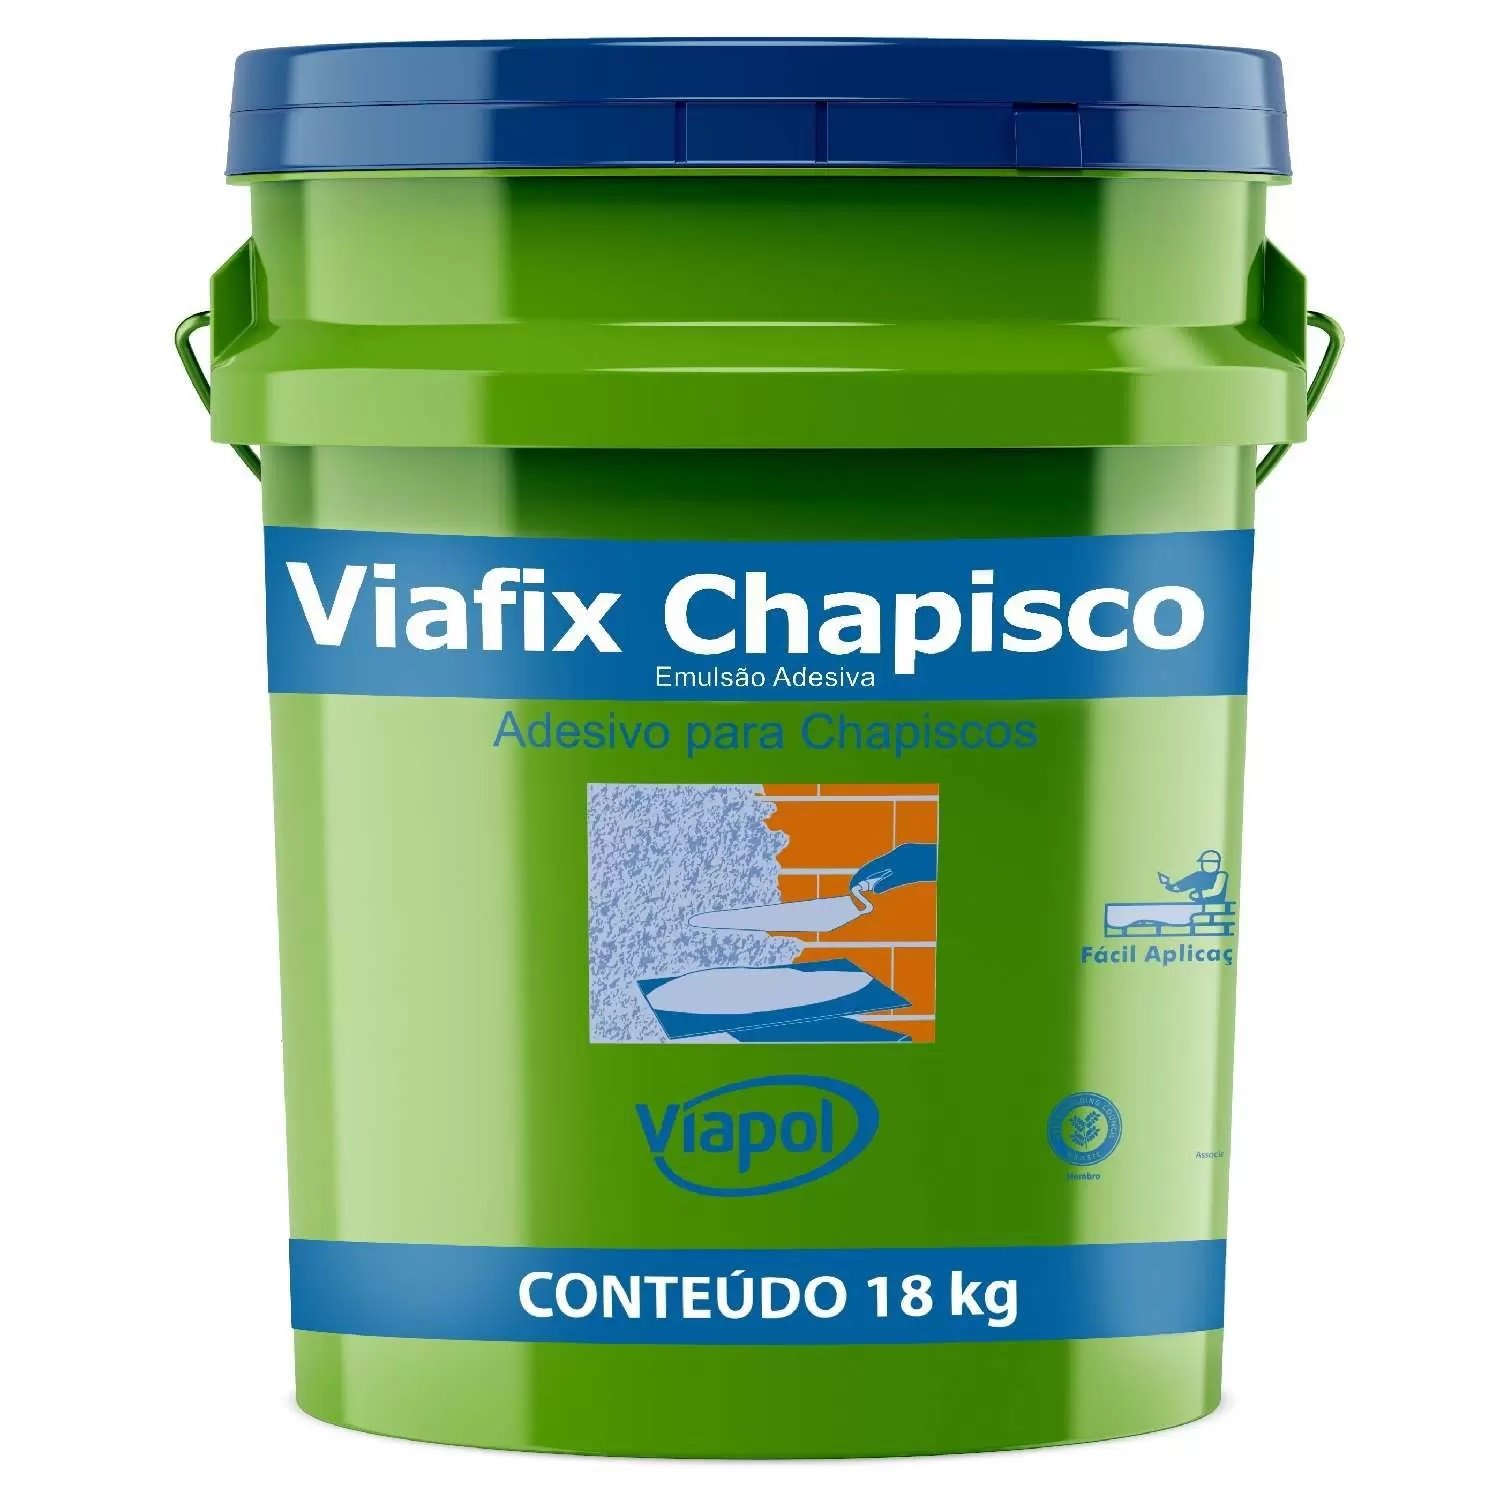 Viafix Chapisco - Adesivo Para Chapisco Viapol 18kg